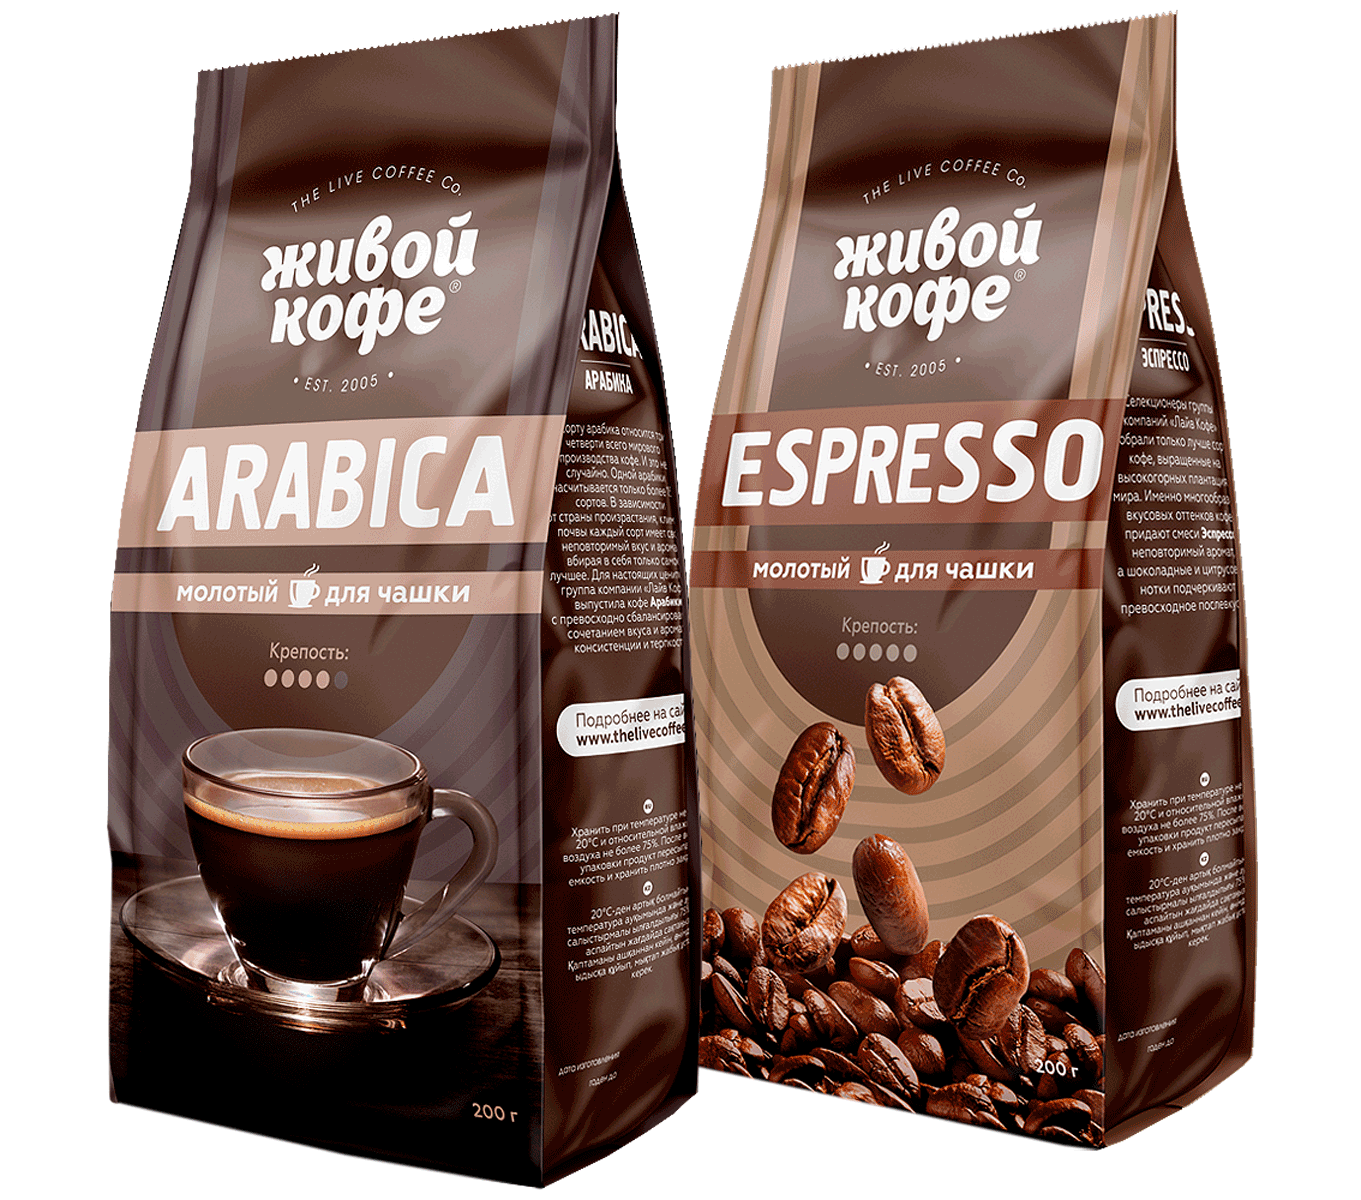 Молю кофе или мелю кофе. Живой кофе Арабика в зернах. Кофе Арабика эспрессо. Упаковка кофе в зернах. Марки кофе в зернах.